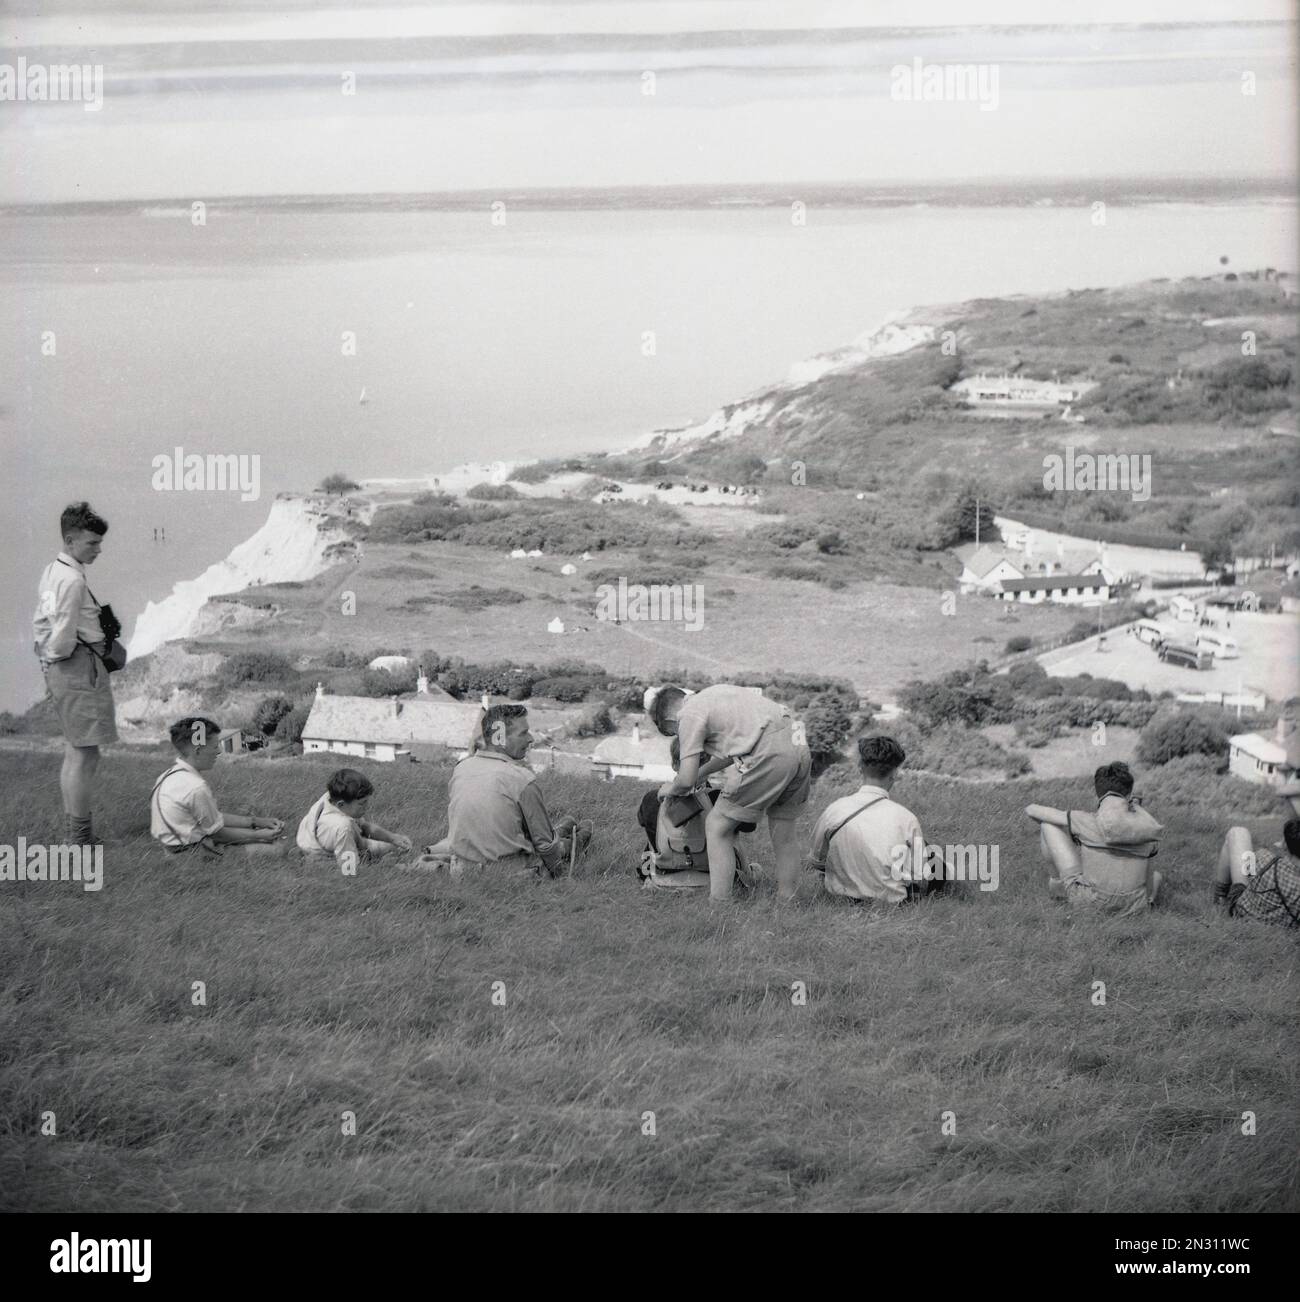 1955, historique, un enseignant de sexe masculin avec un petit groupe d'élèves adolescents lors d'une excursion sur le terrain, assis sur la colline herbeuse surplombant Alum Bay sur l'île de Wight, Hampshire, Angleterre, Royaume-Uni. Banque D'Images